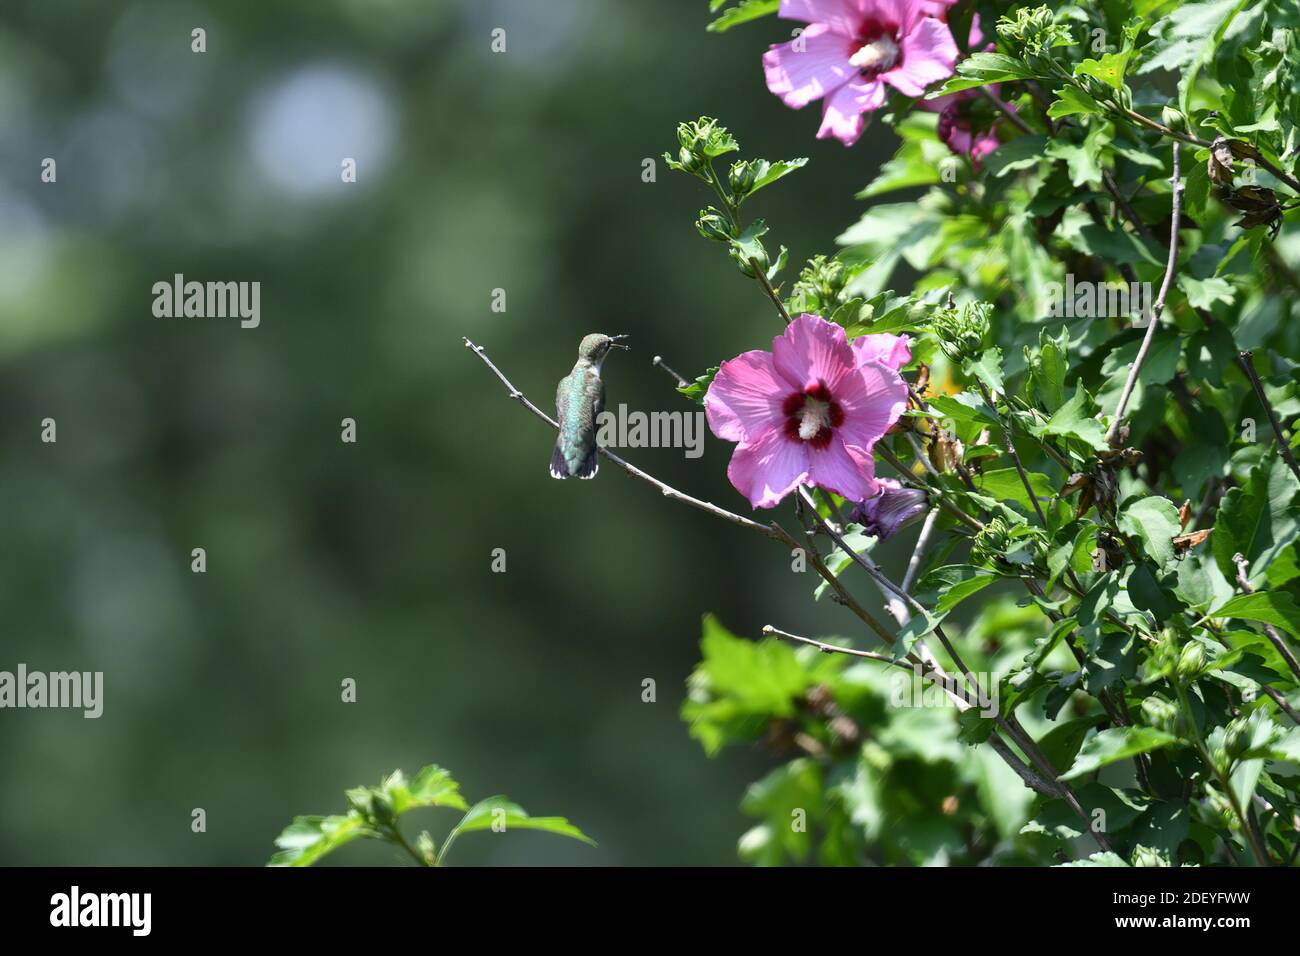 Rubinkehliger Kolibri, der auf der Rose von Sharon Bush in der Nähe von Flower thront Mit Schnabel offen und Pollen am Schnabel Stockfoto